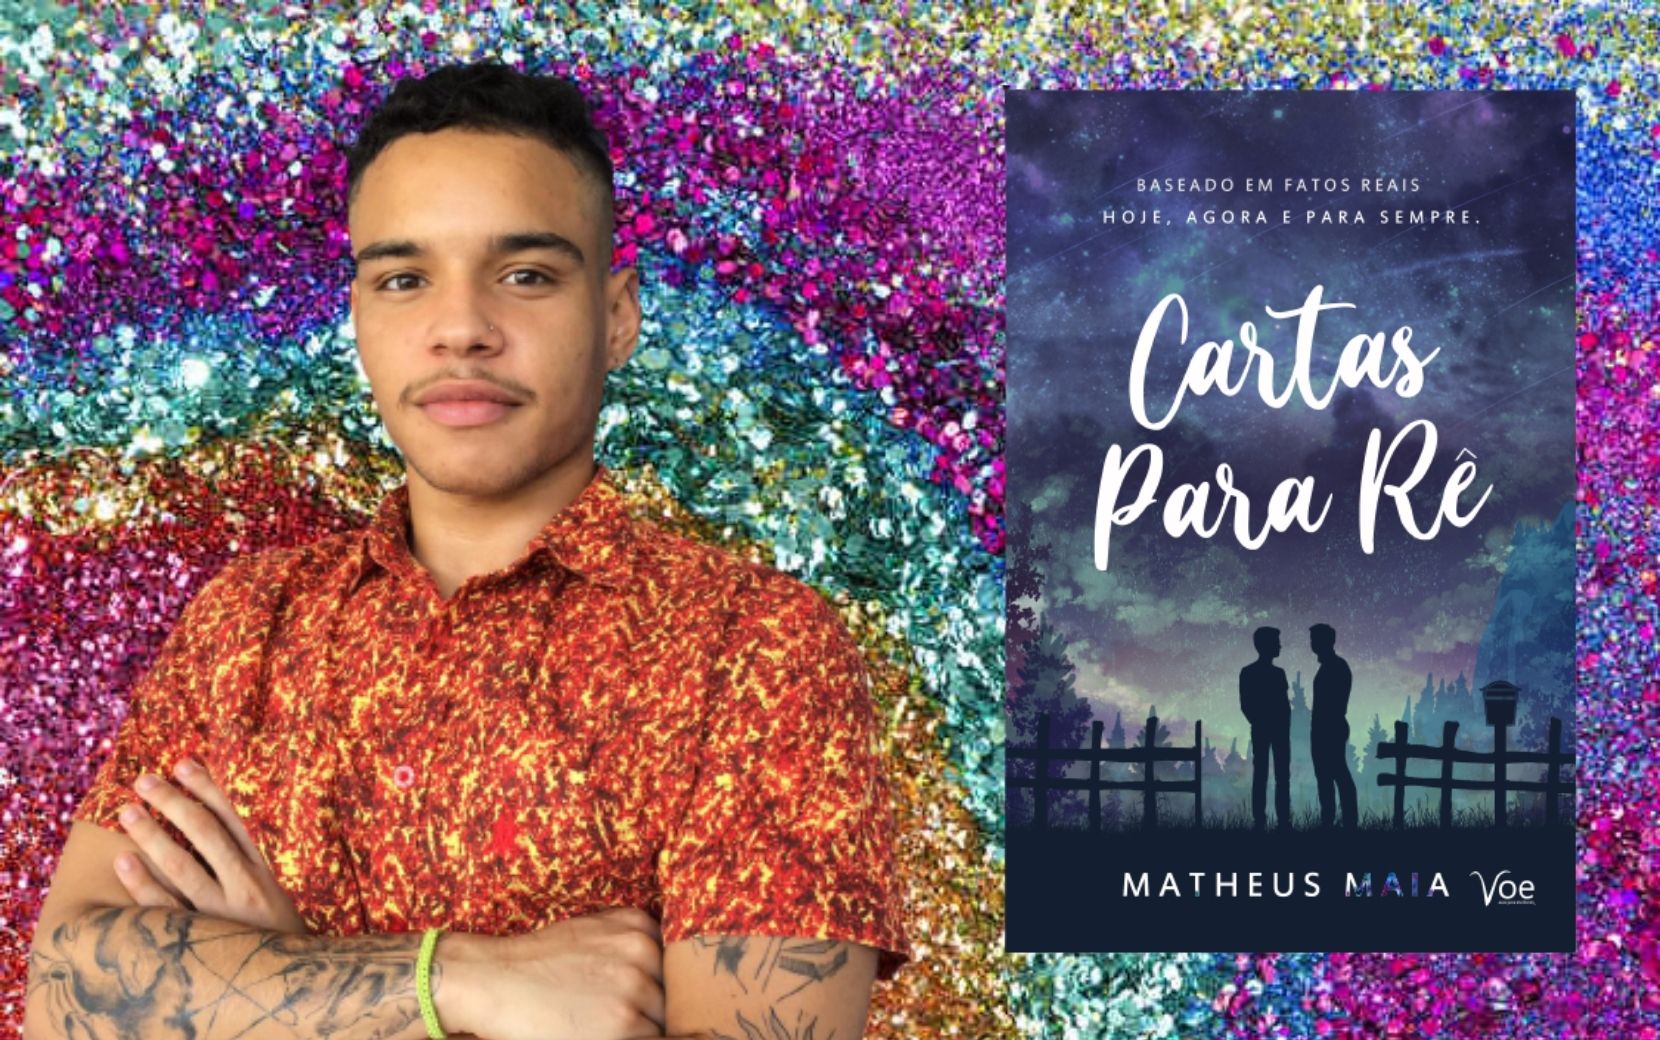 Entrevista: conheça Matheus Maia, autor de " Cartas Para Rê" e outros romances LGBTQIA+